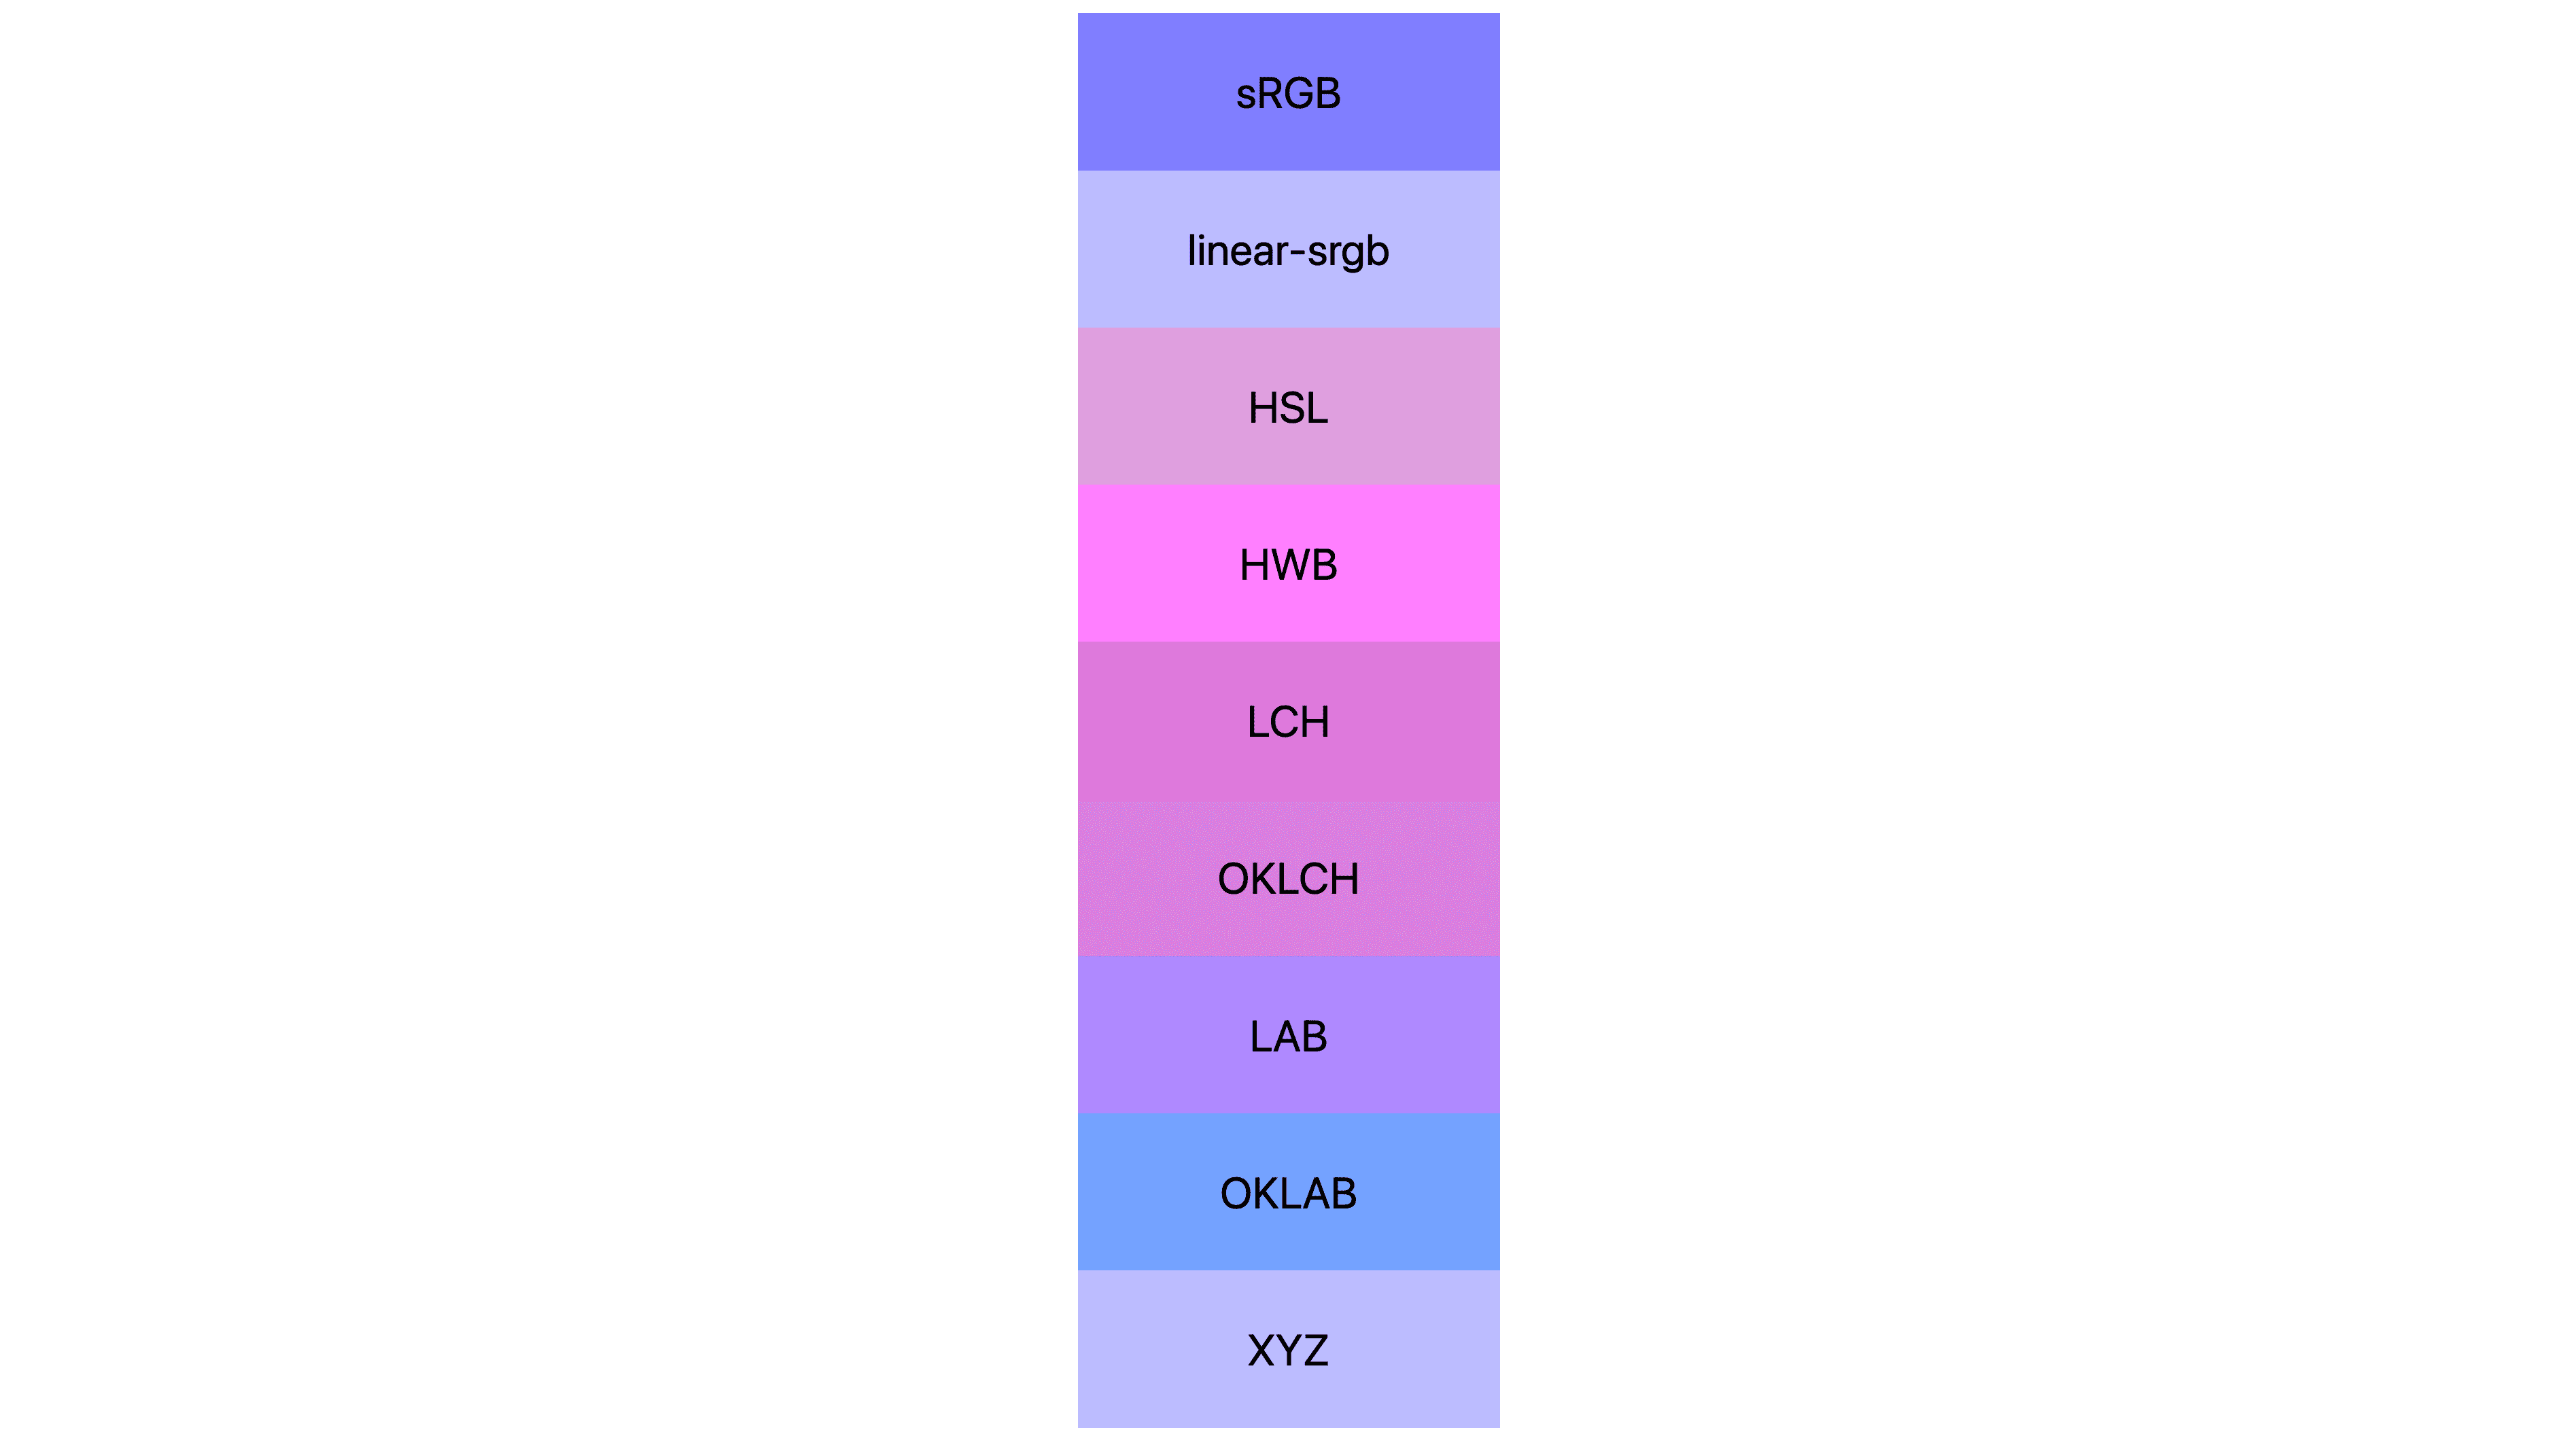 7 ruang warna (sRGB, linear-sRGB, lch, oklch, lab, oklab, xyz) masing-masing ditampilkan memiliki hasil yang berbeda. Banyak yang berwarna merah muda atau ungu, beberapa yang sebenarnya masih berwarna biru.